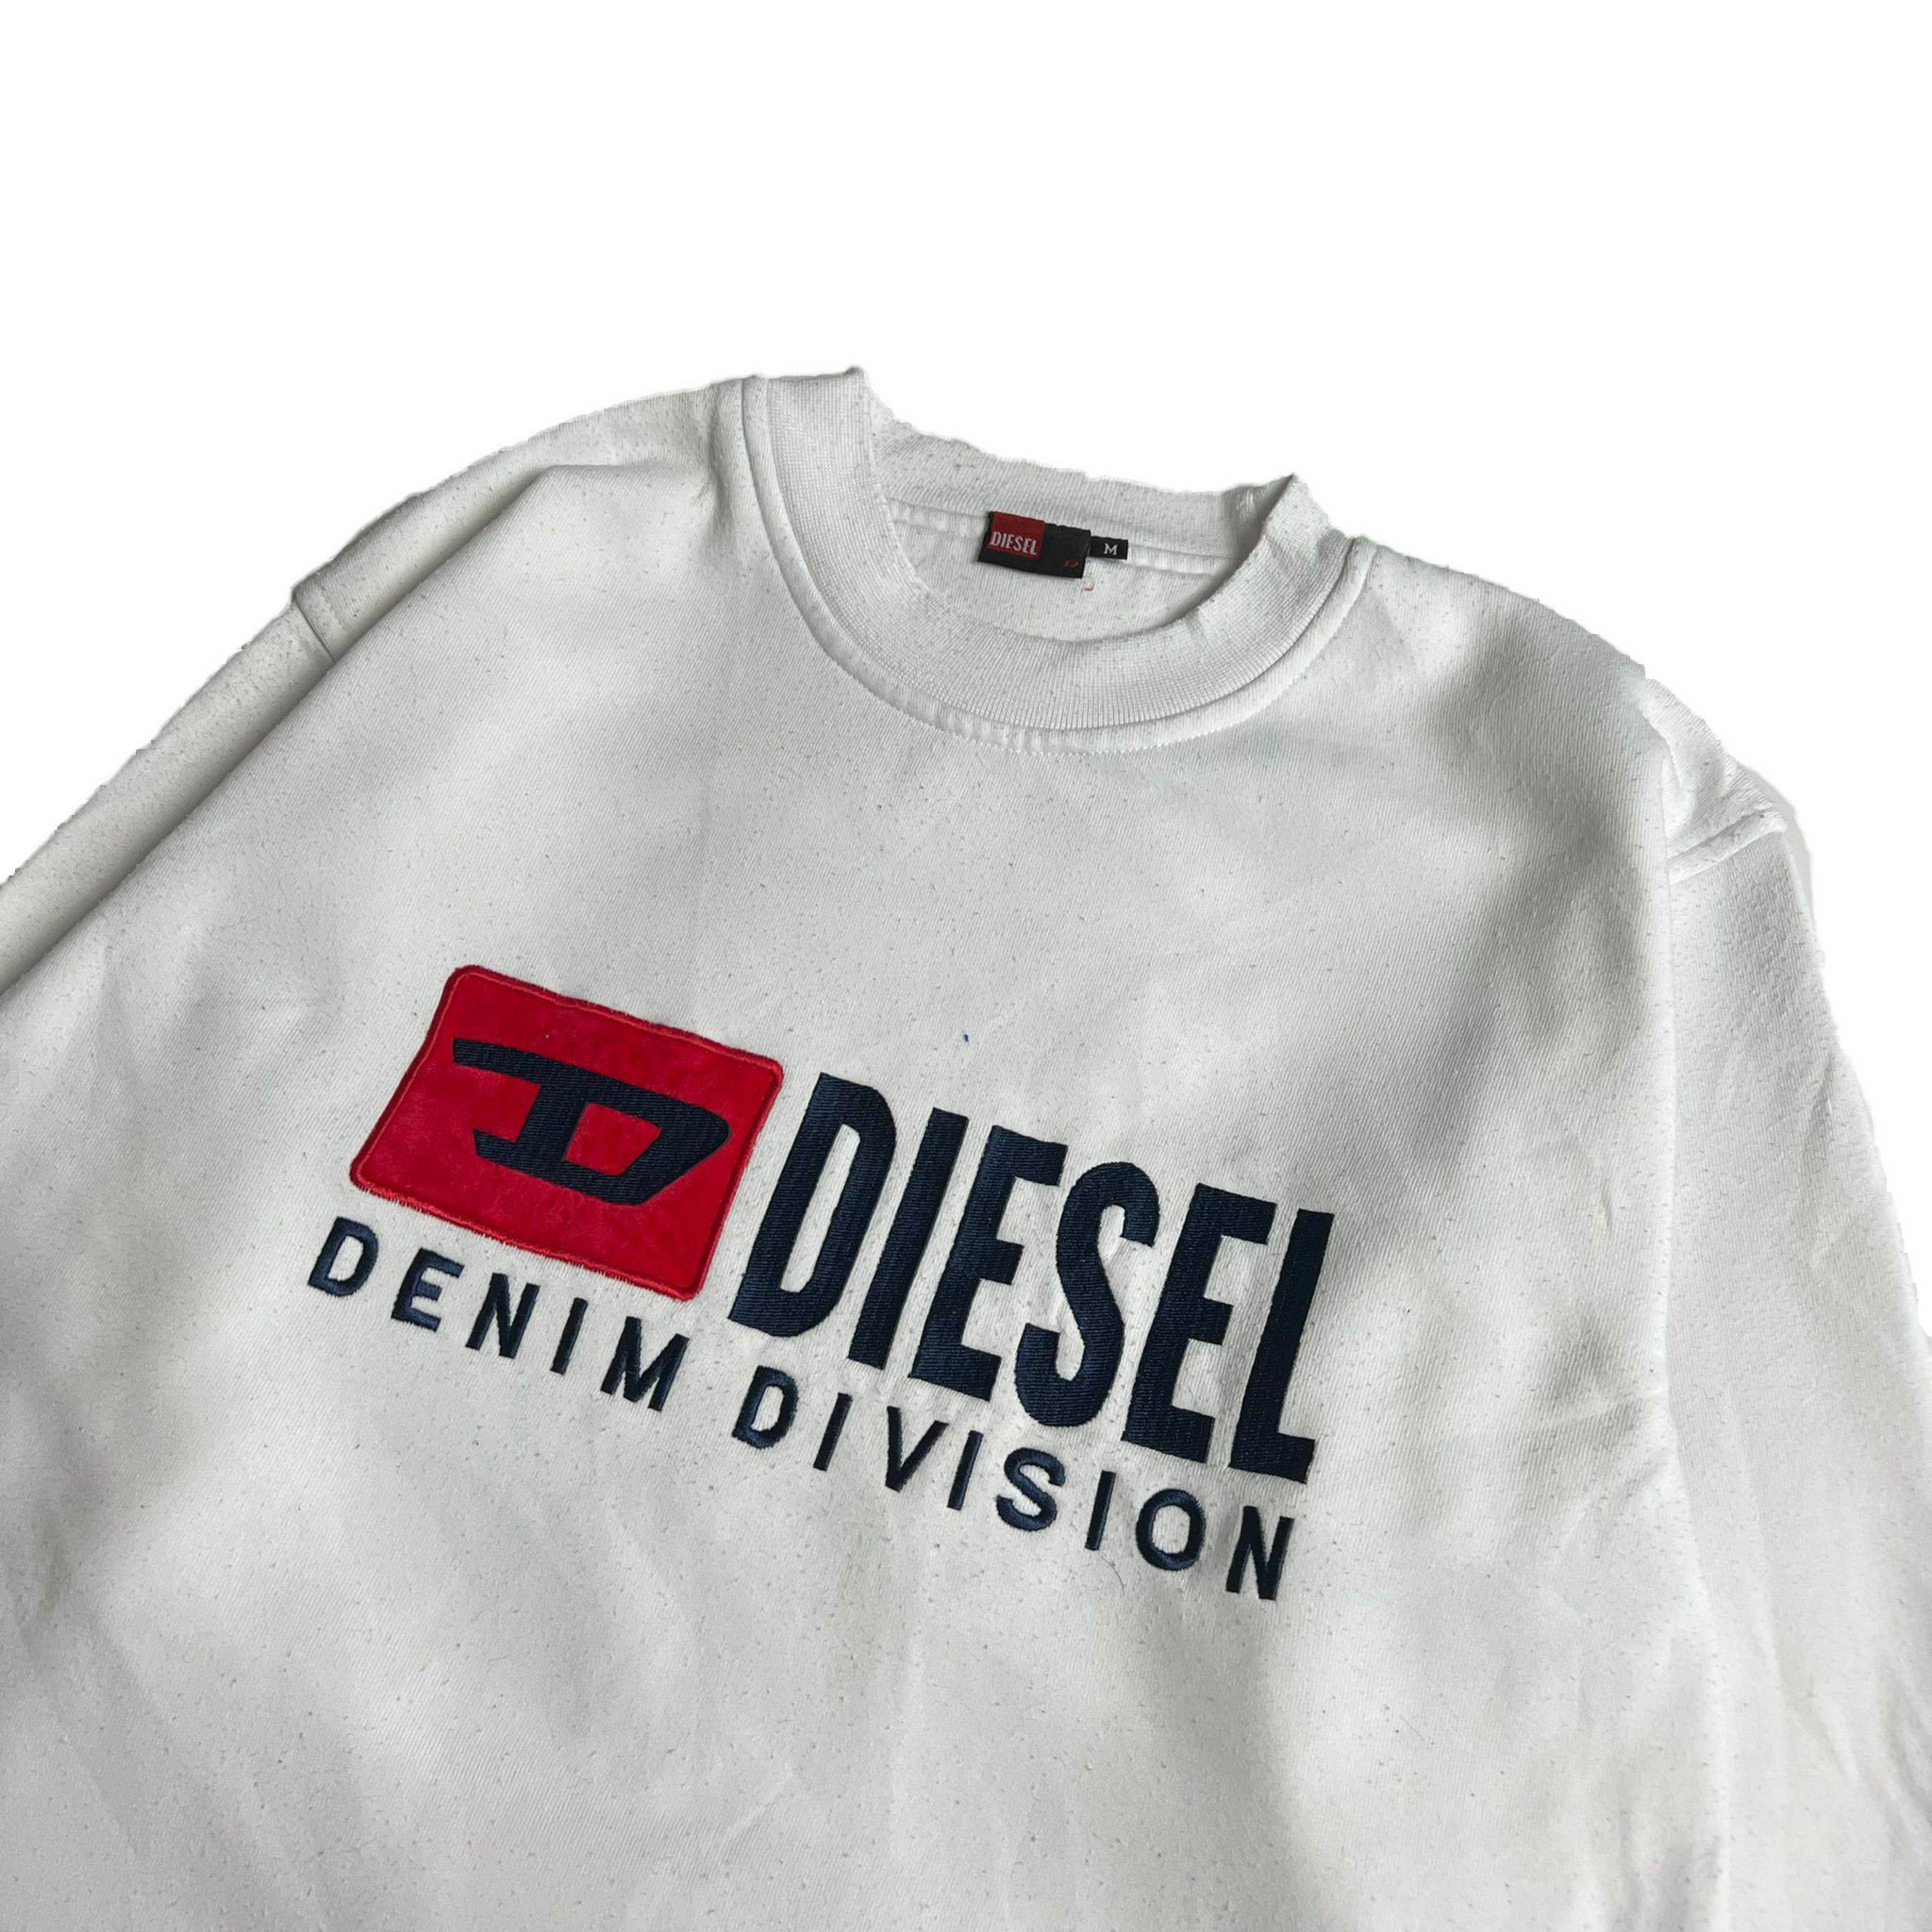 Diesel sweatshirt